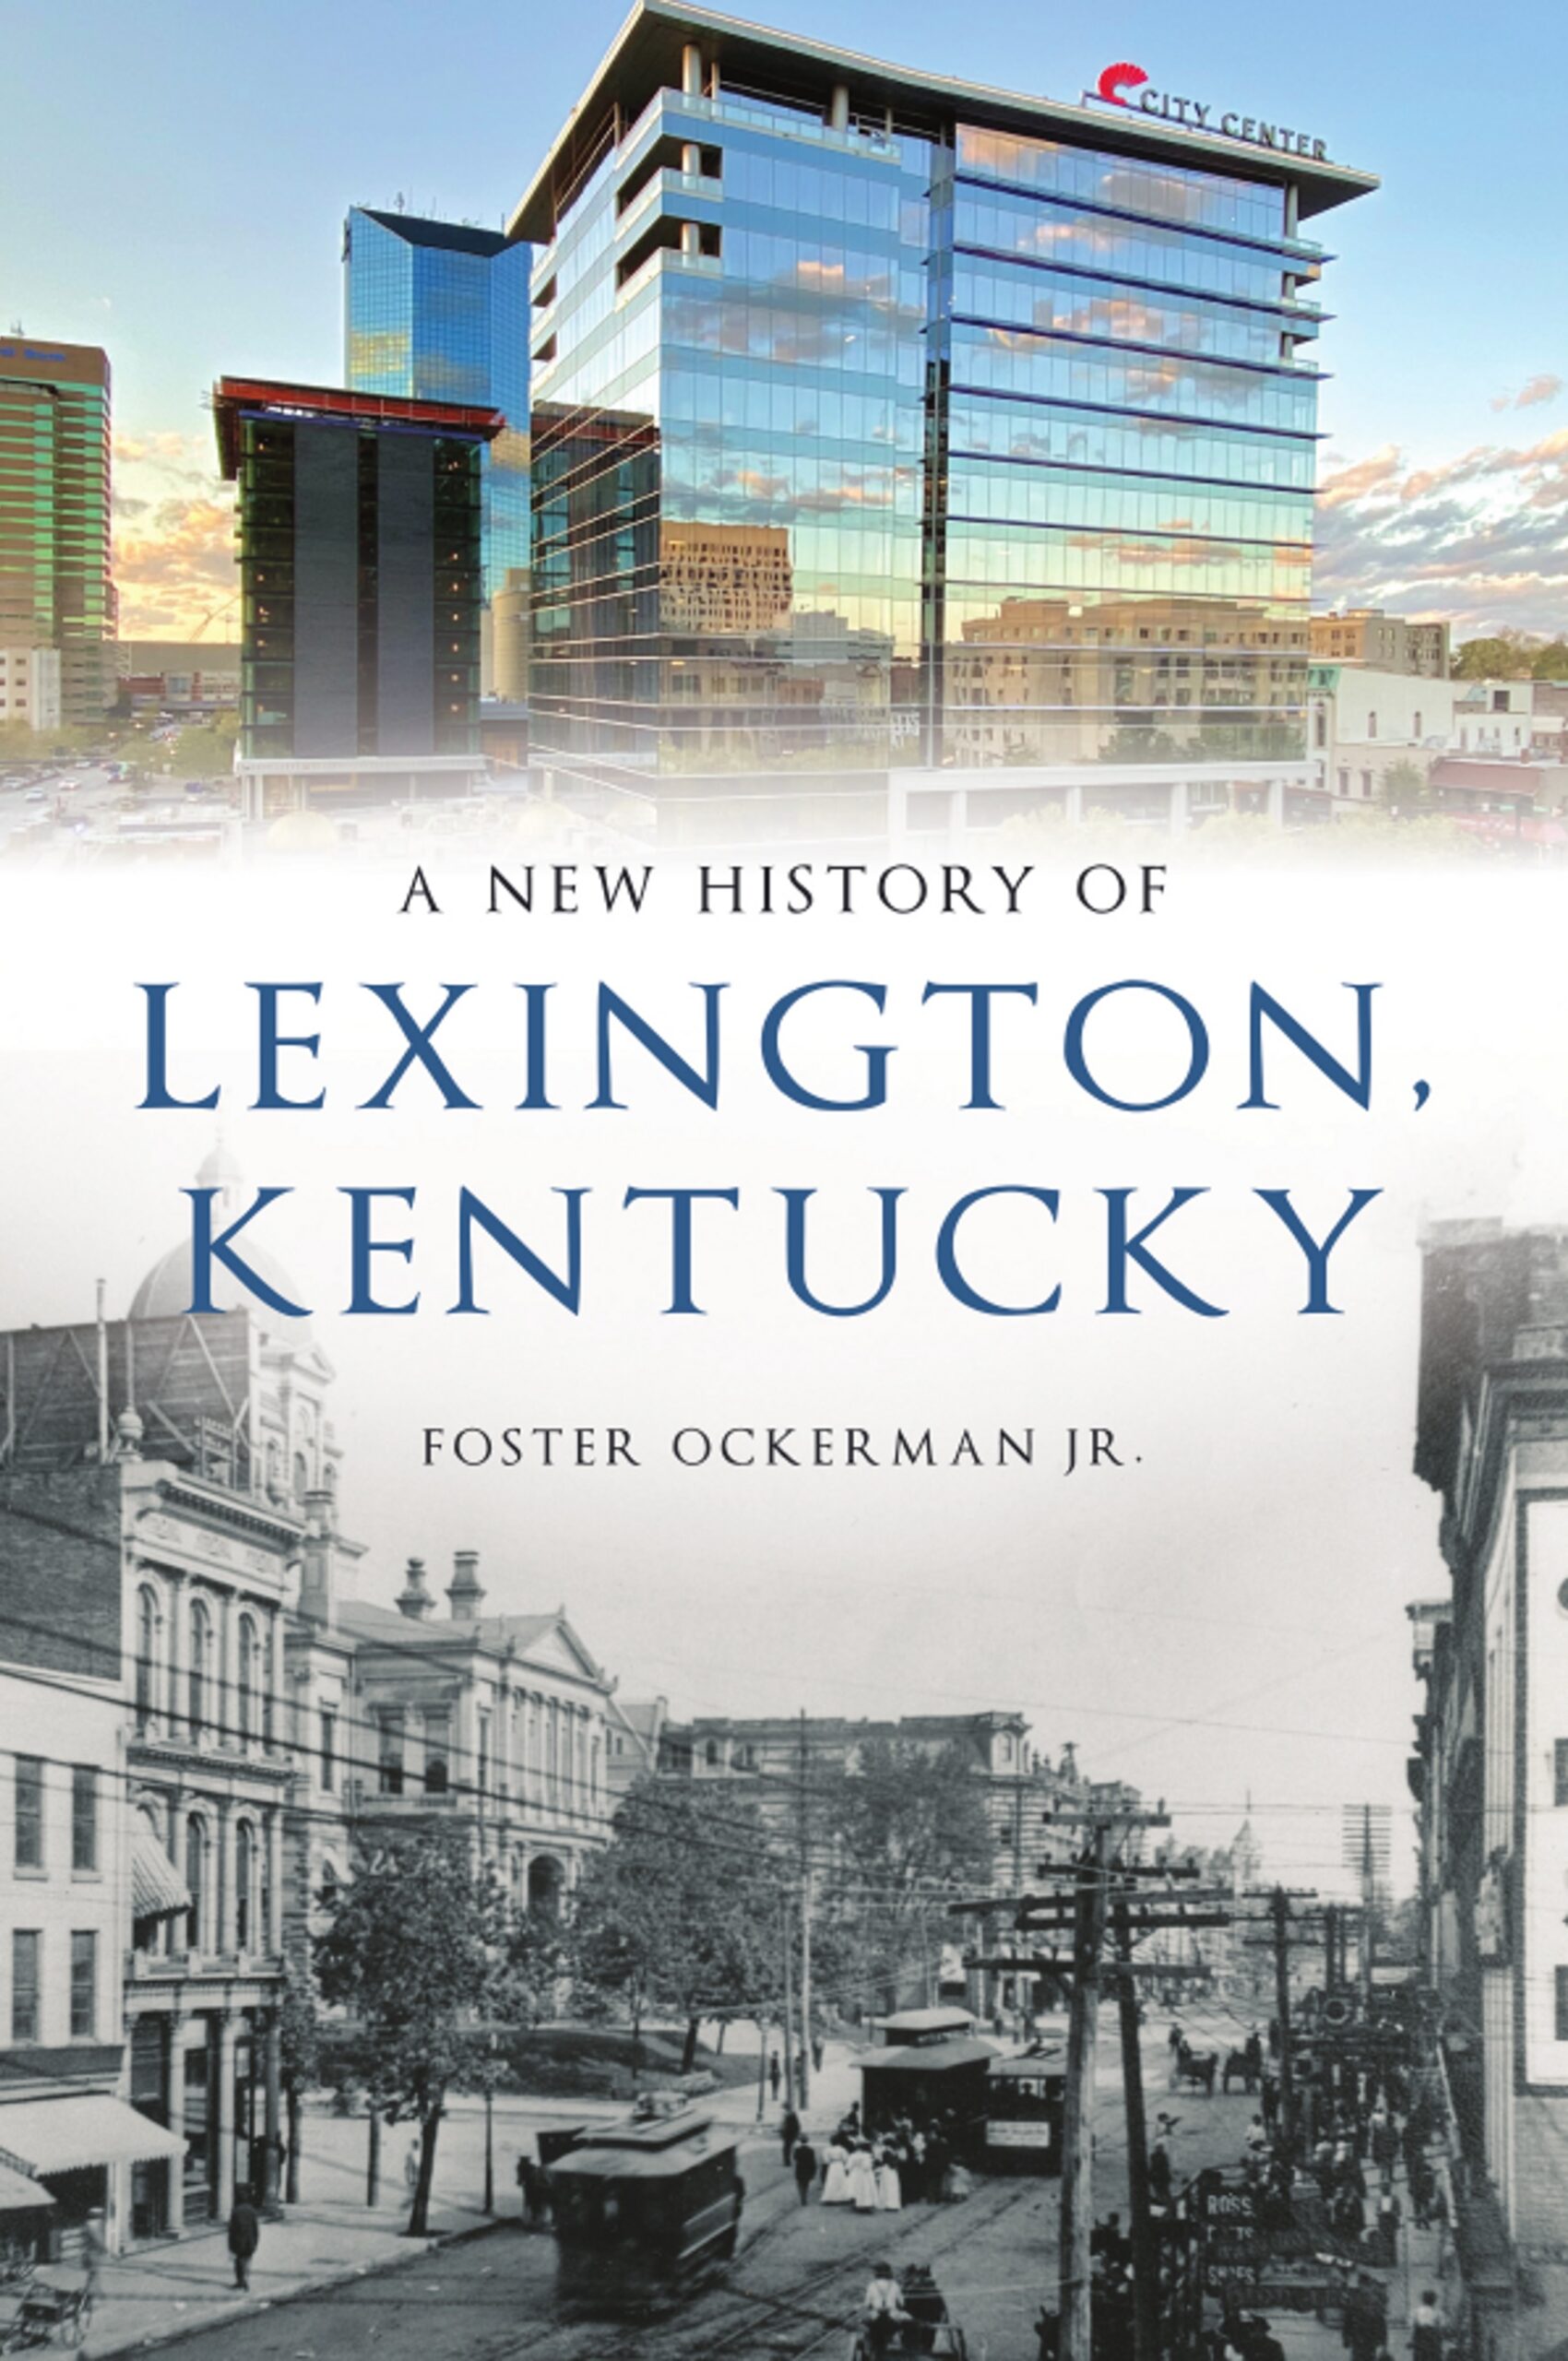 A New History of Lexington Kentucky